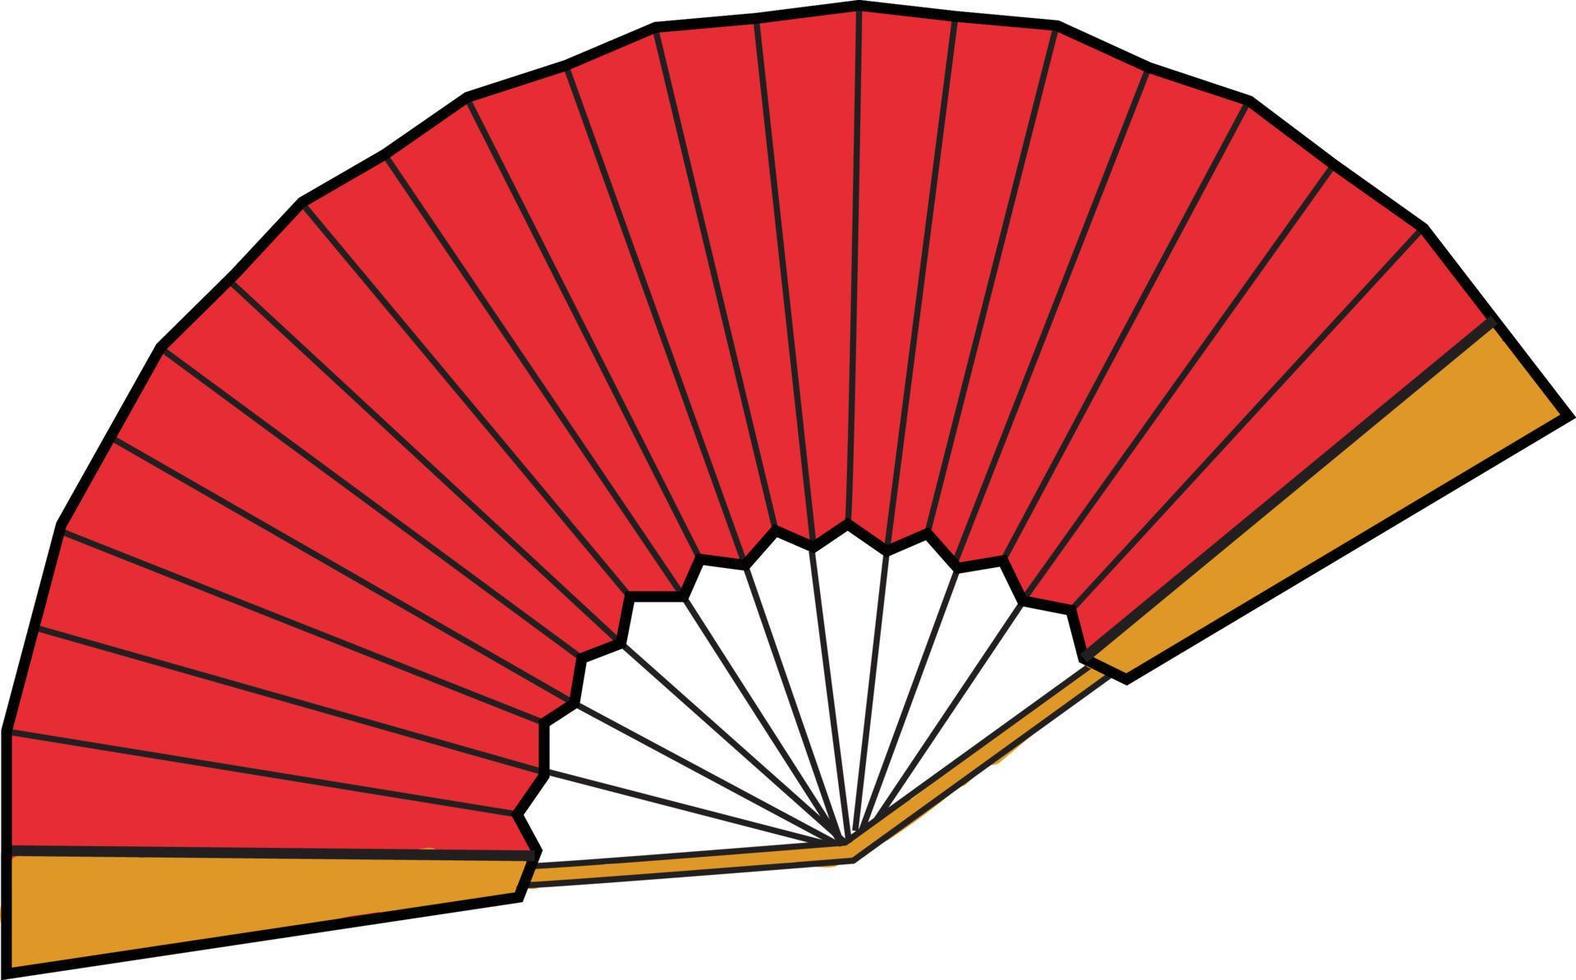 Abanico rojo, ilustración, vector sobre fondo blanco.